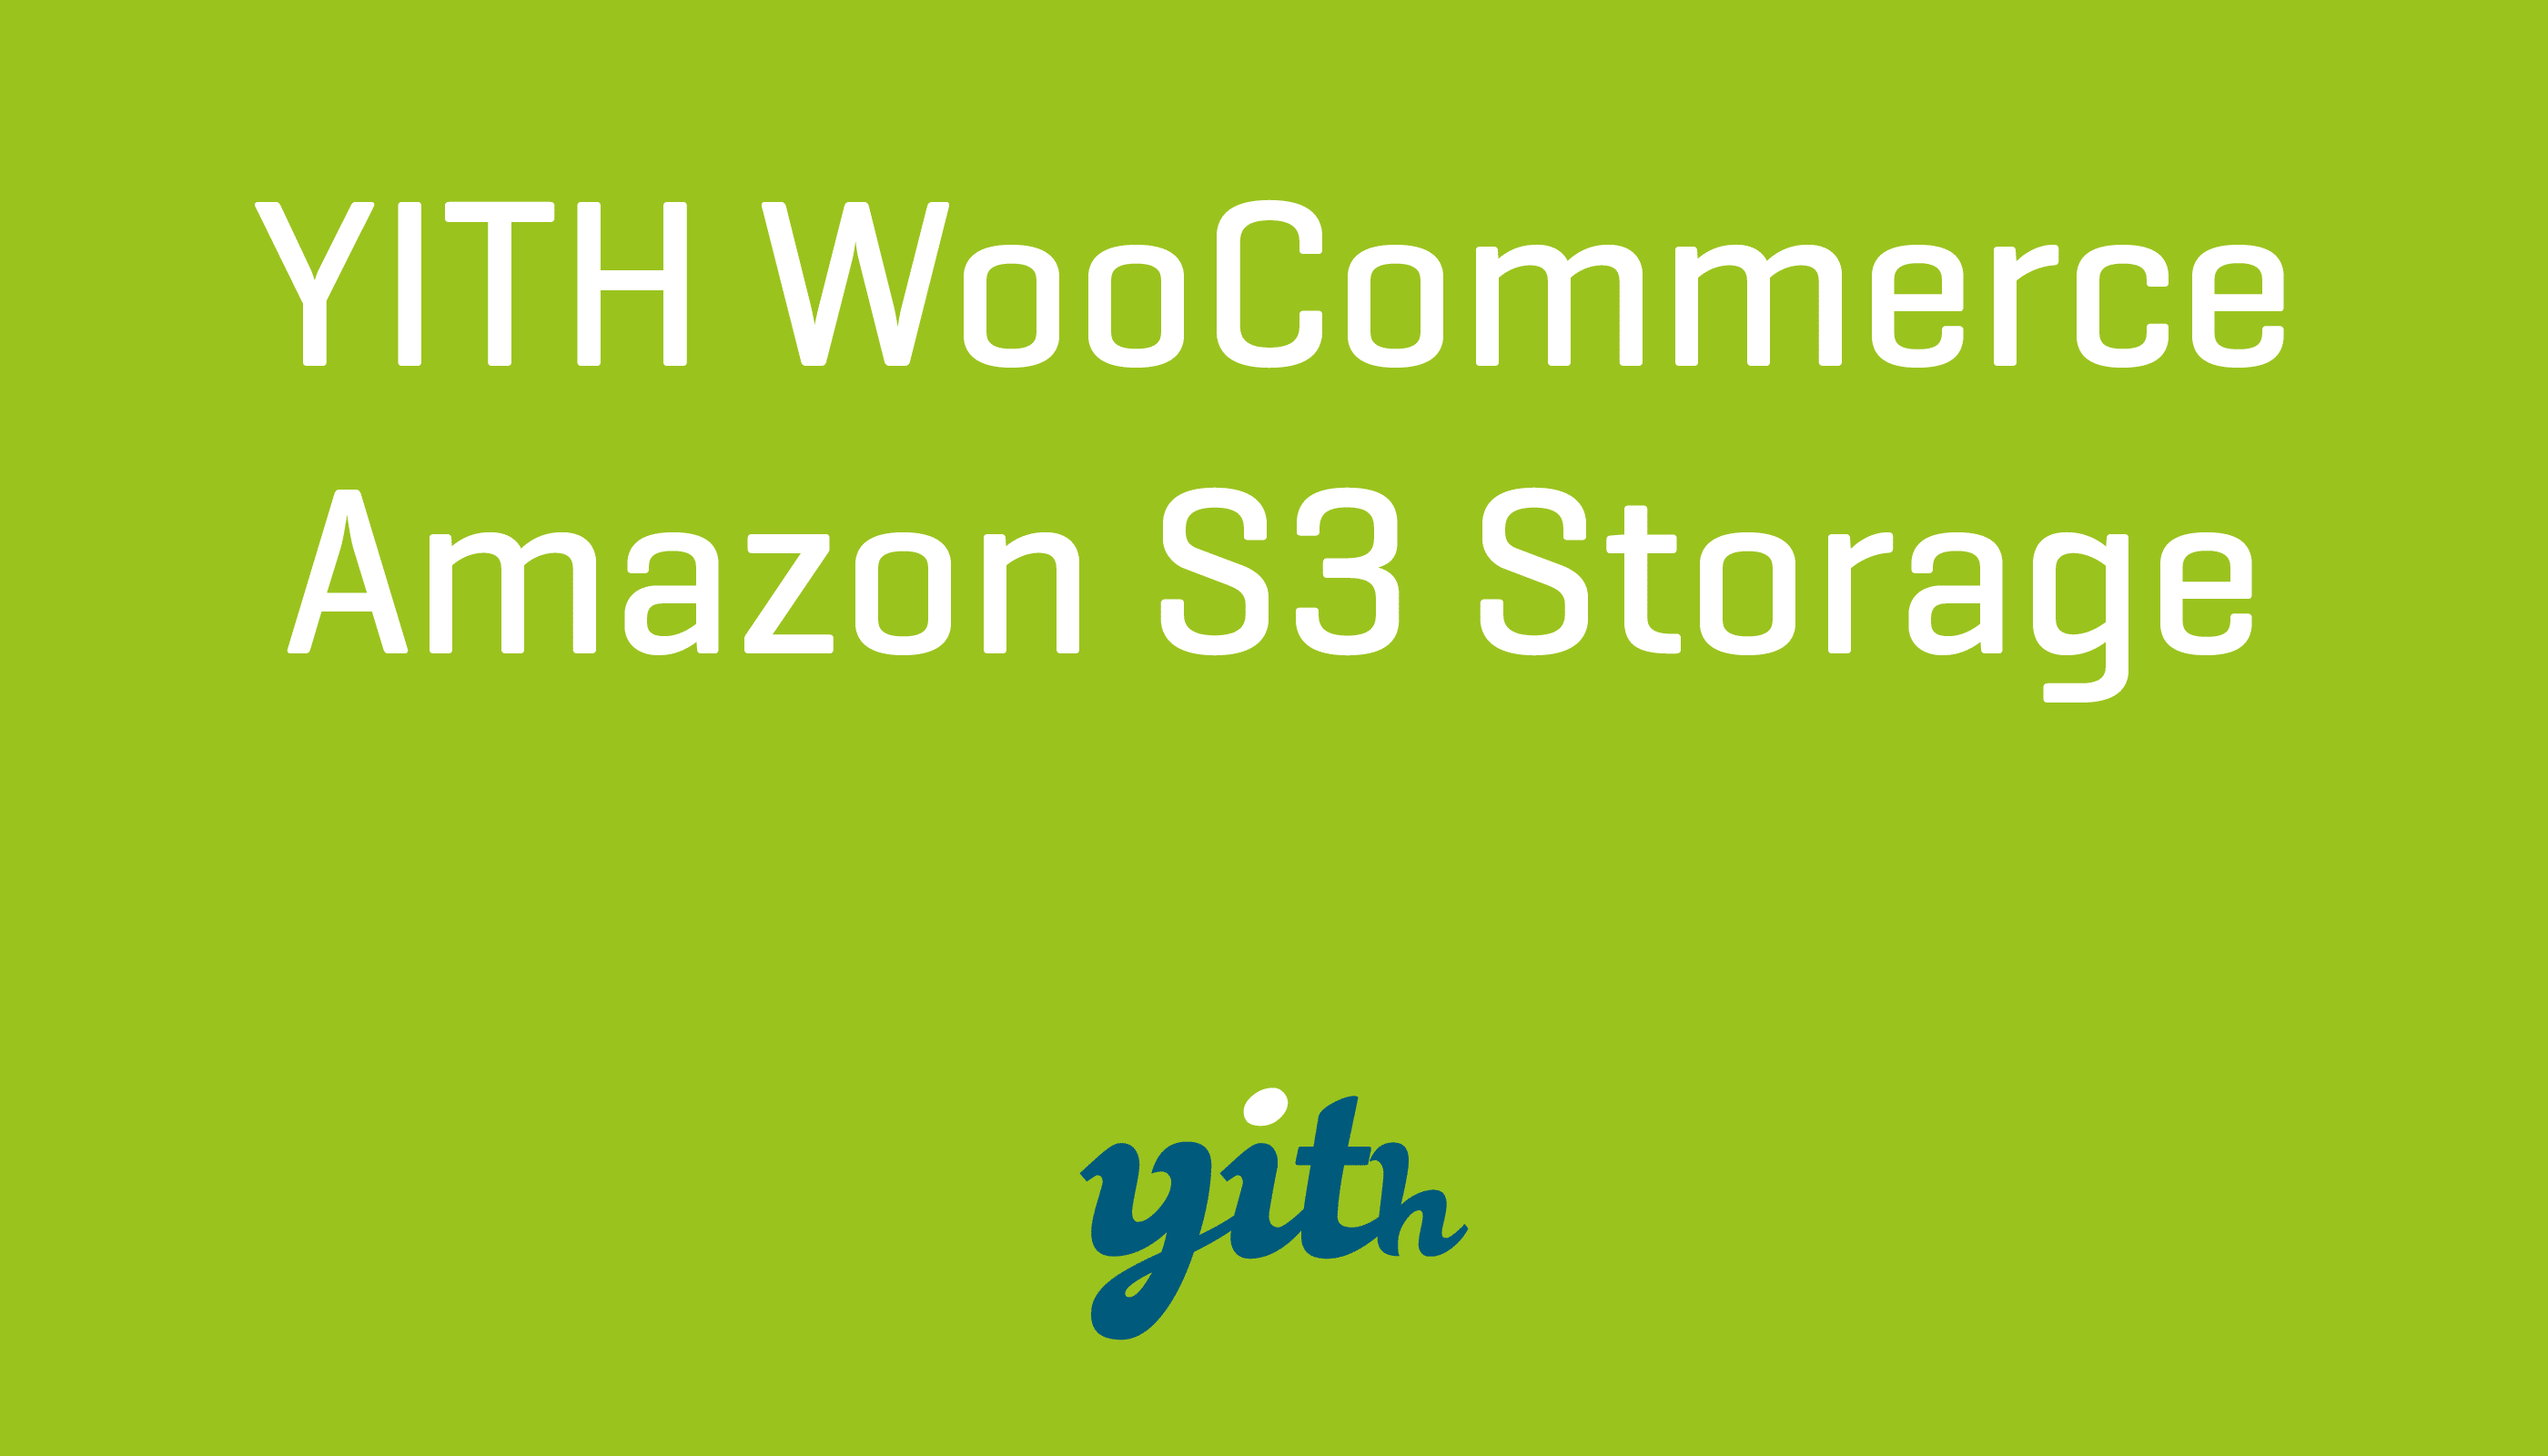 YITH WooCommerce Amazon S3 Storage